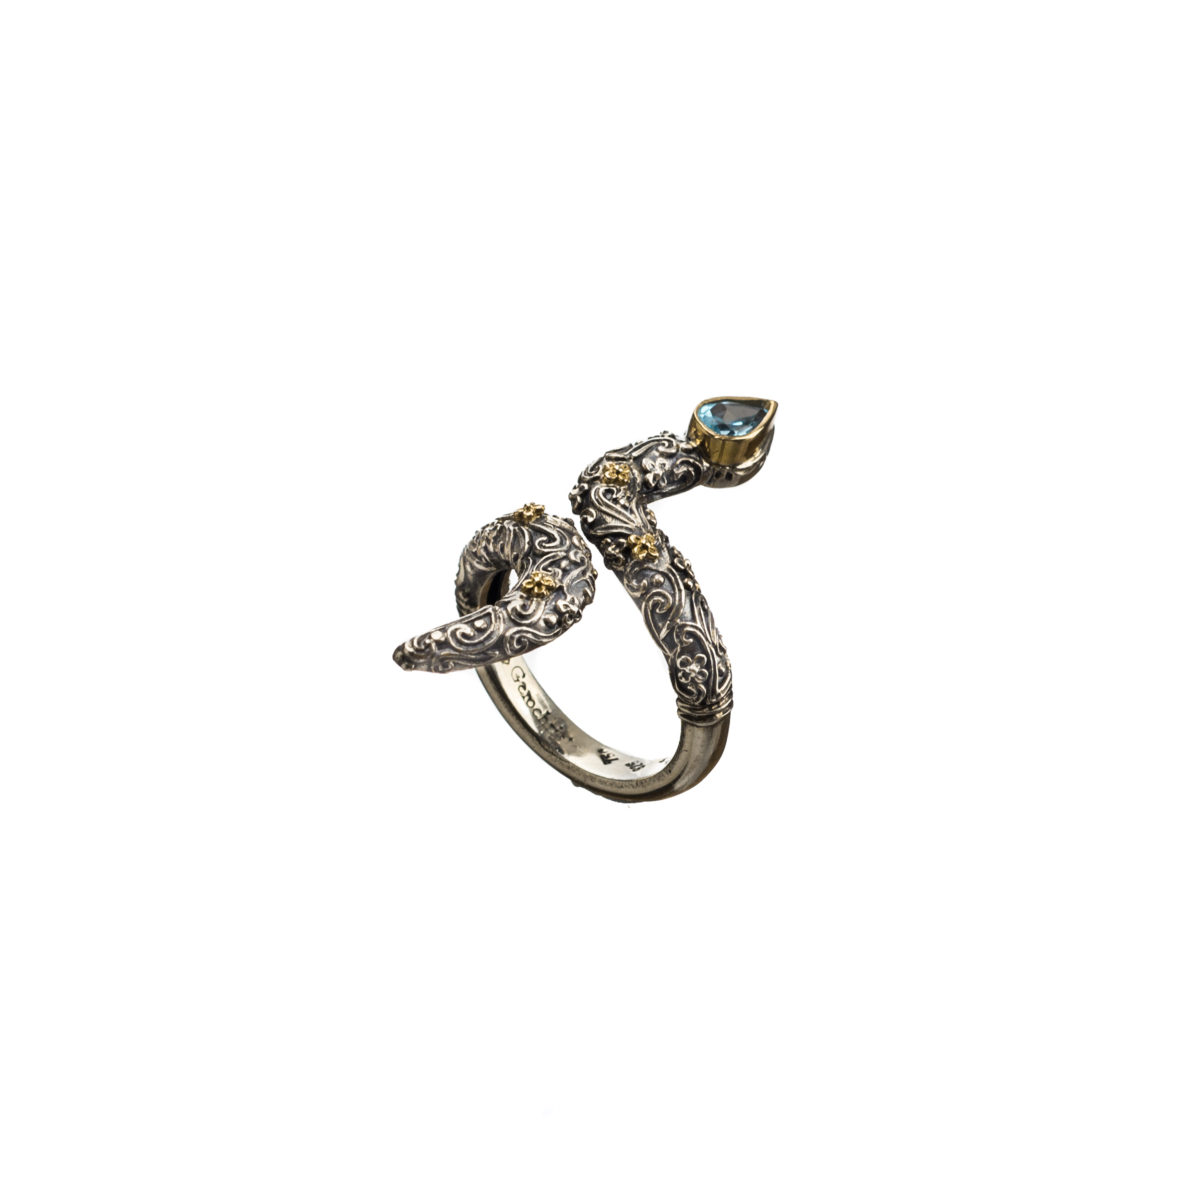 Εντυπωσιακό δαχτυλίδι Gerochristos σε σχήμα φιδιού στολισμένο με ένα πανέμορφο μπλέ τοπάζι